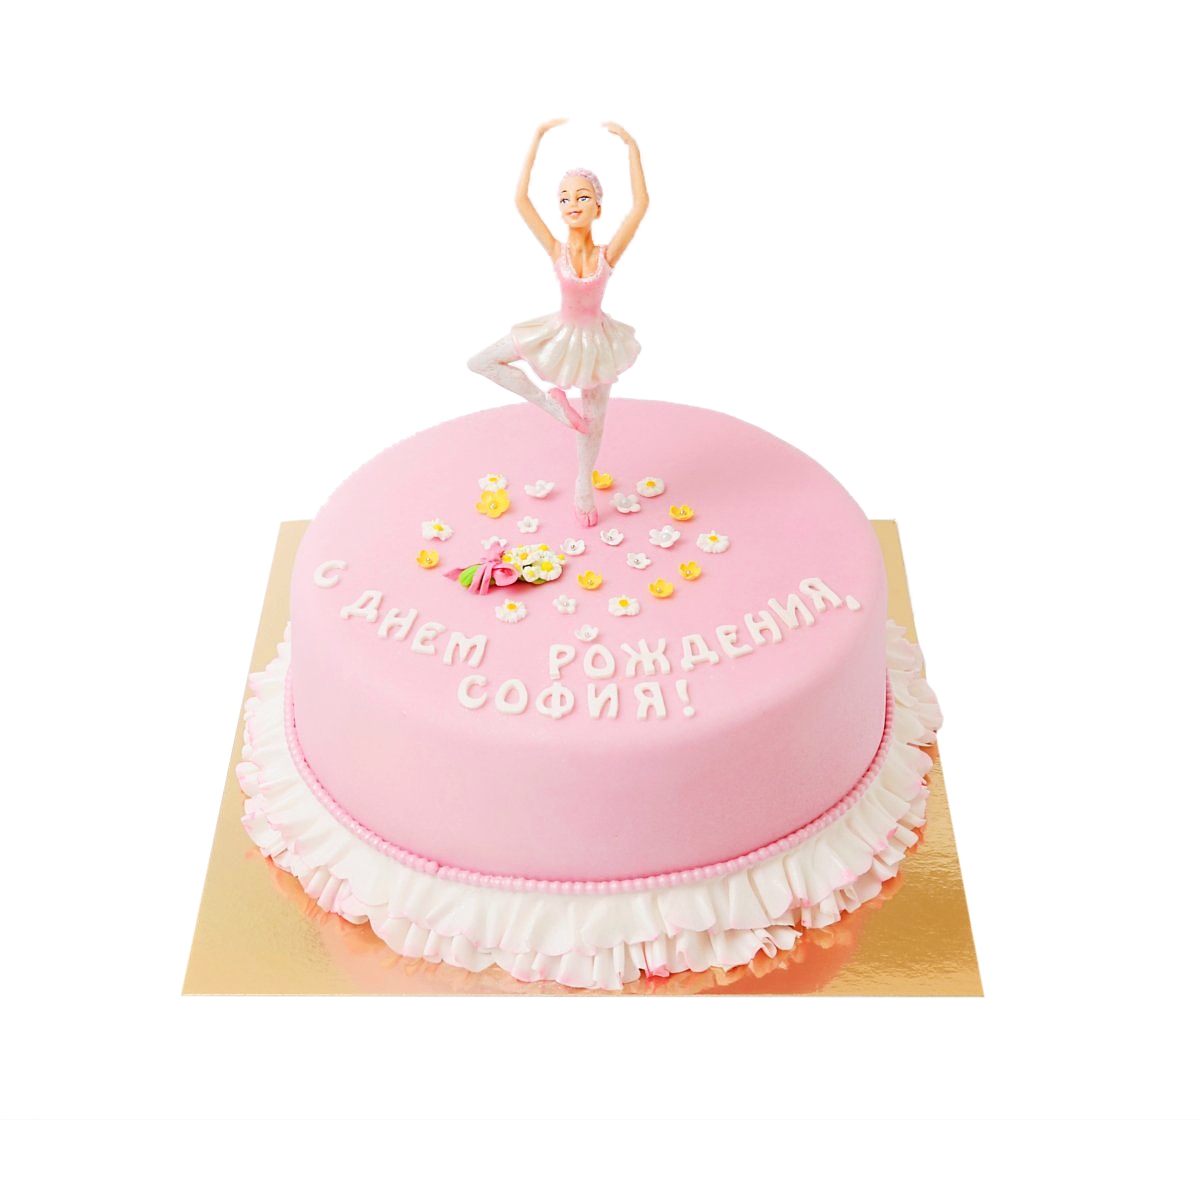 Cake to order - Ballerina Cake to order - Ballerina